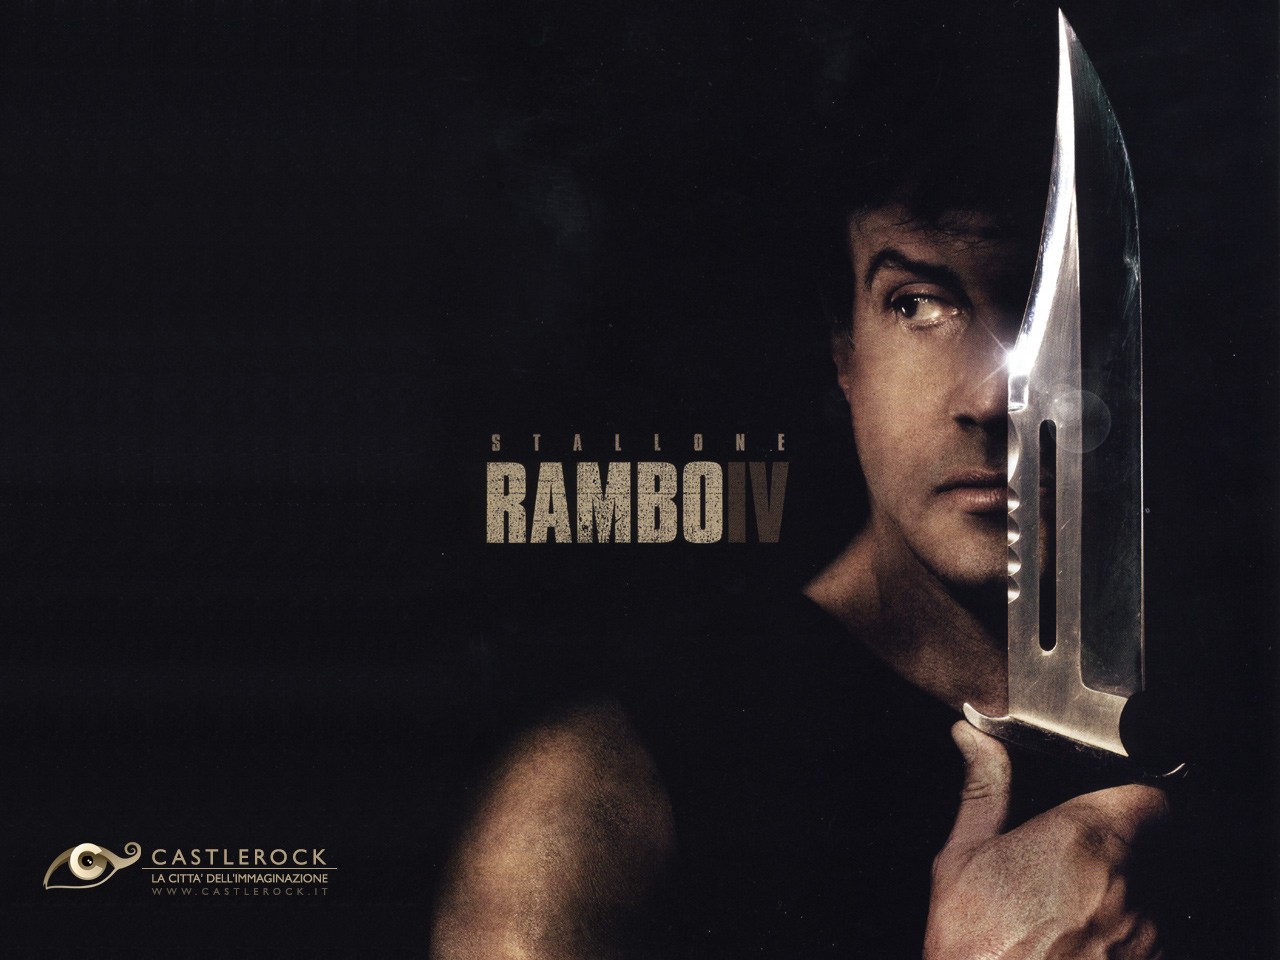 Free download Rambo 4 wallpaper John Rambo [1280x960] for your Desktop, Mobile & Tablet. Explore Rambo Wallpaper. John Rambo Wallpaper